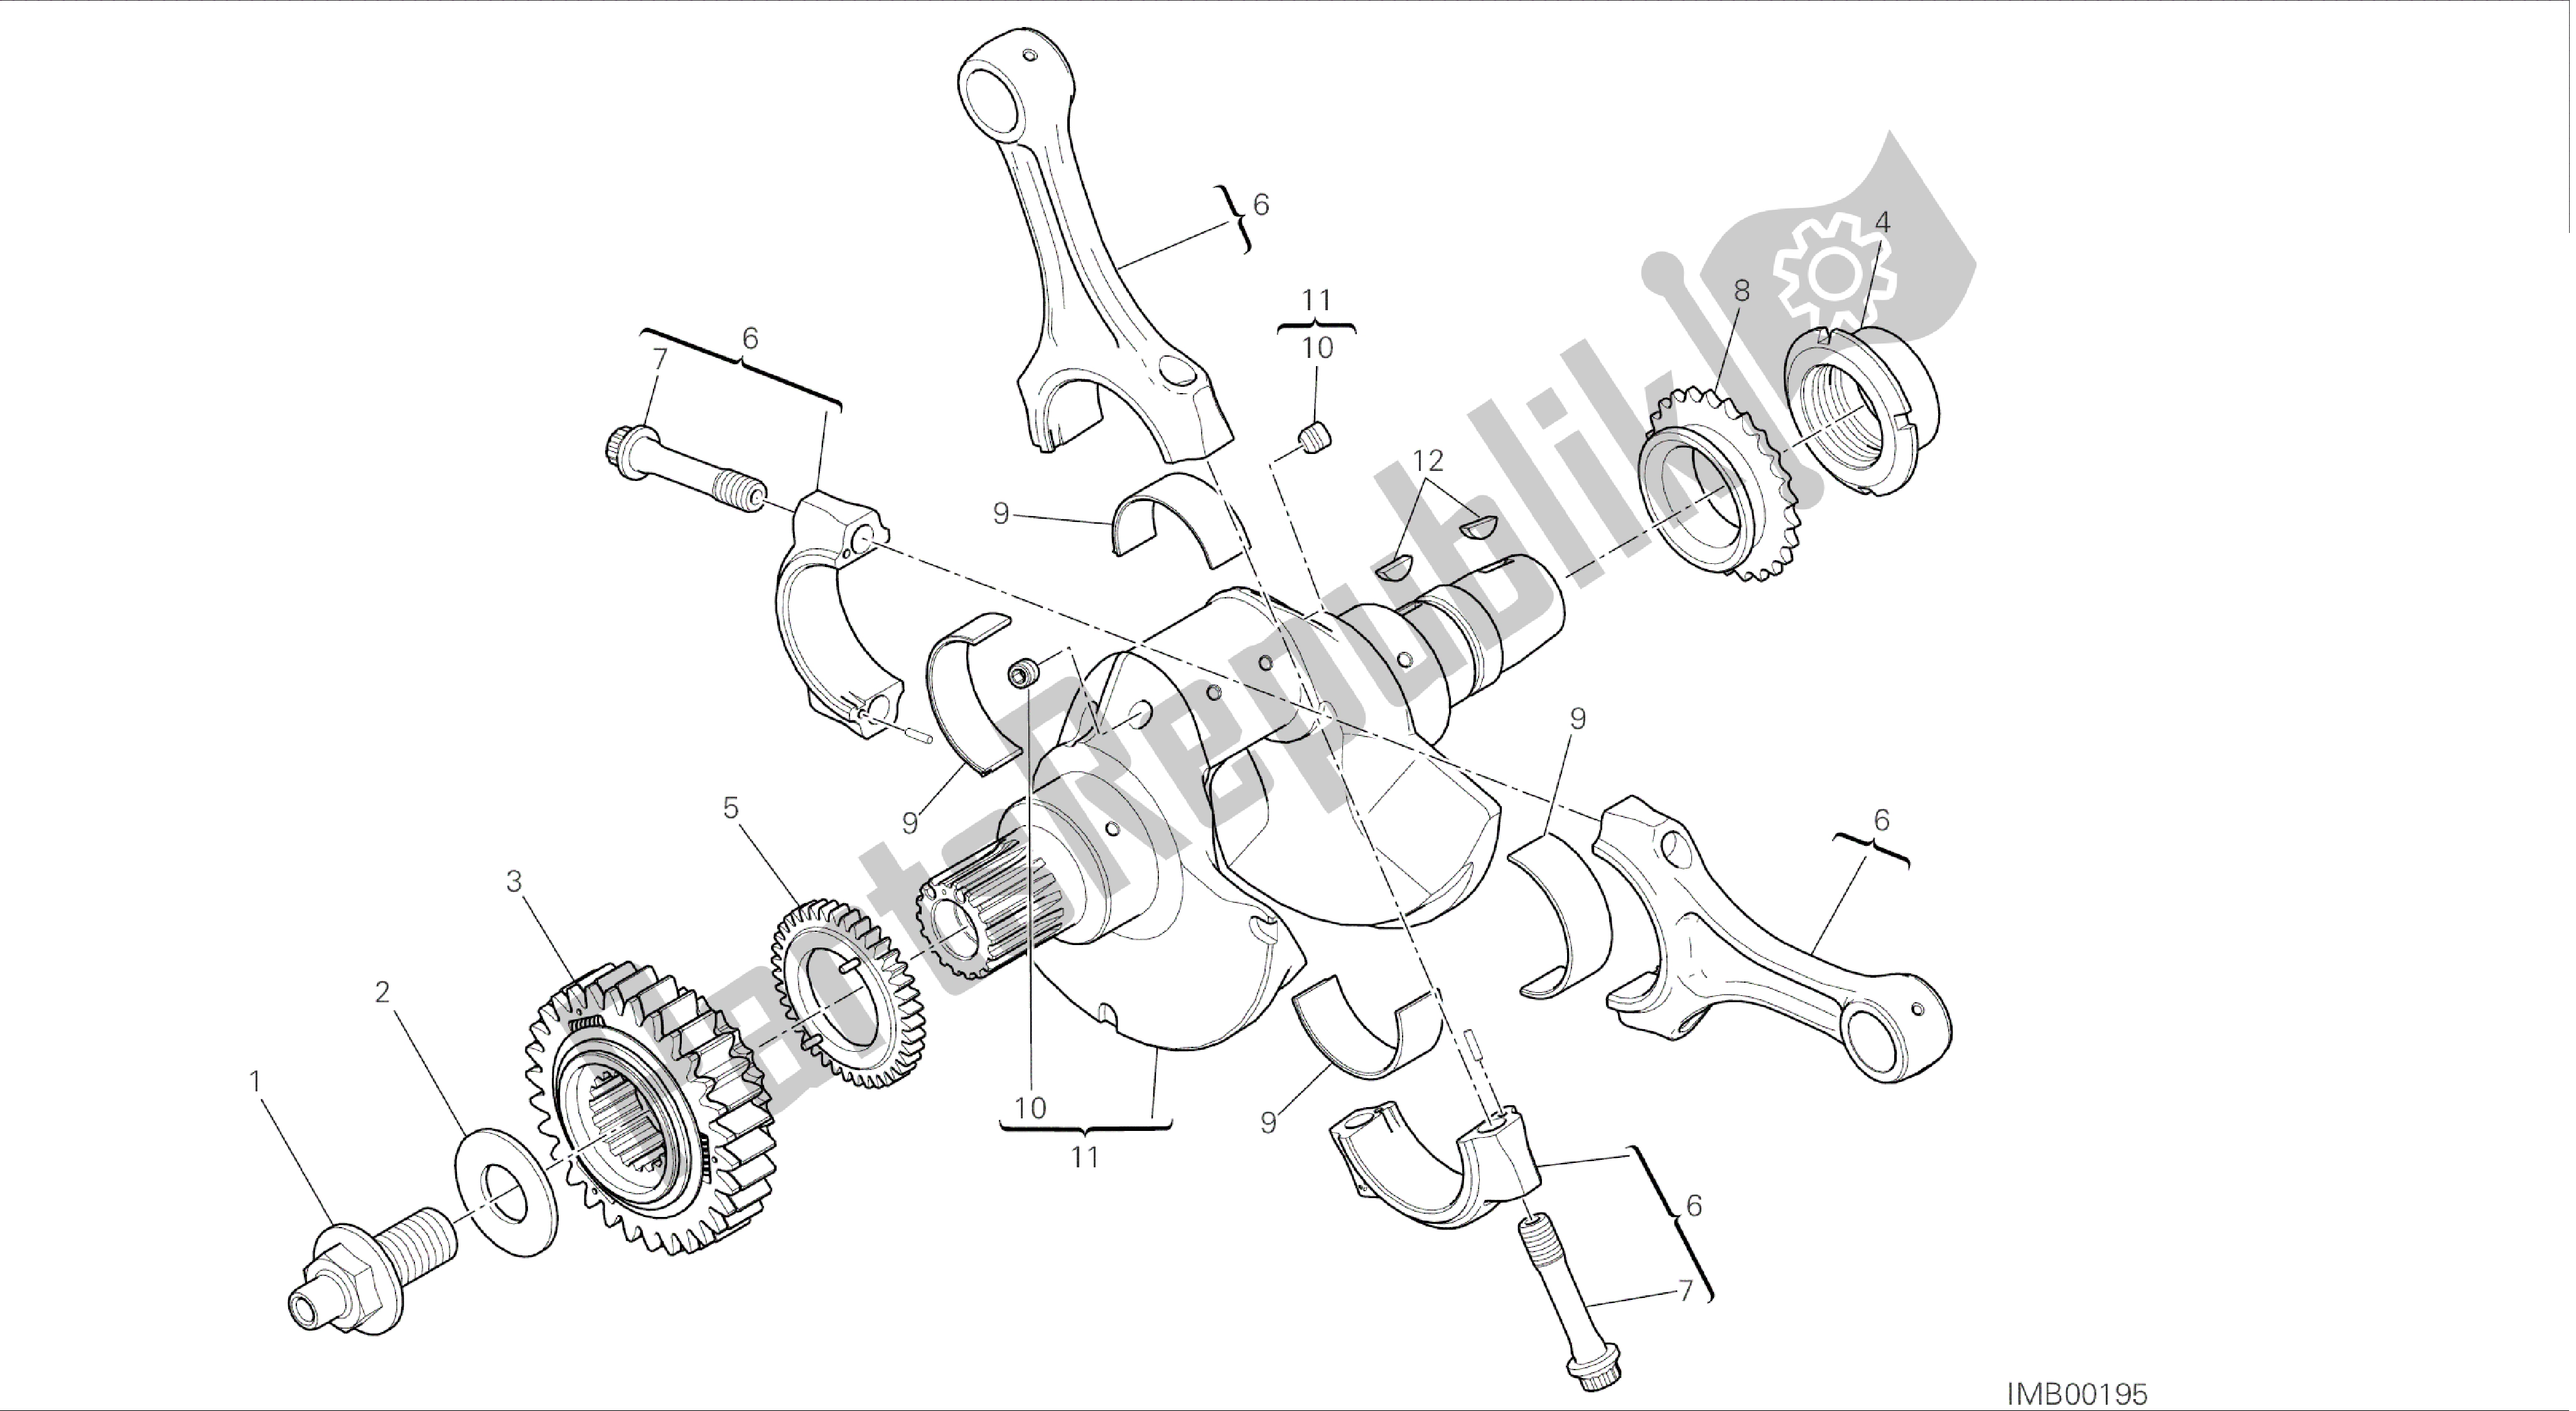 Todas las partes para Dibujo 006 - Bielas [mod: 899 Abs; Xst: Aus, Eur, Fra, Jap, Twn] Motor De Grupo de Ducati Panigale 899 2014